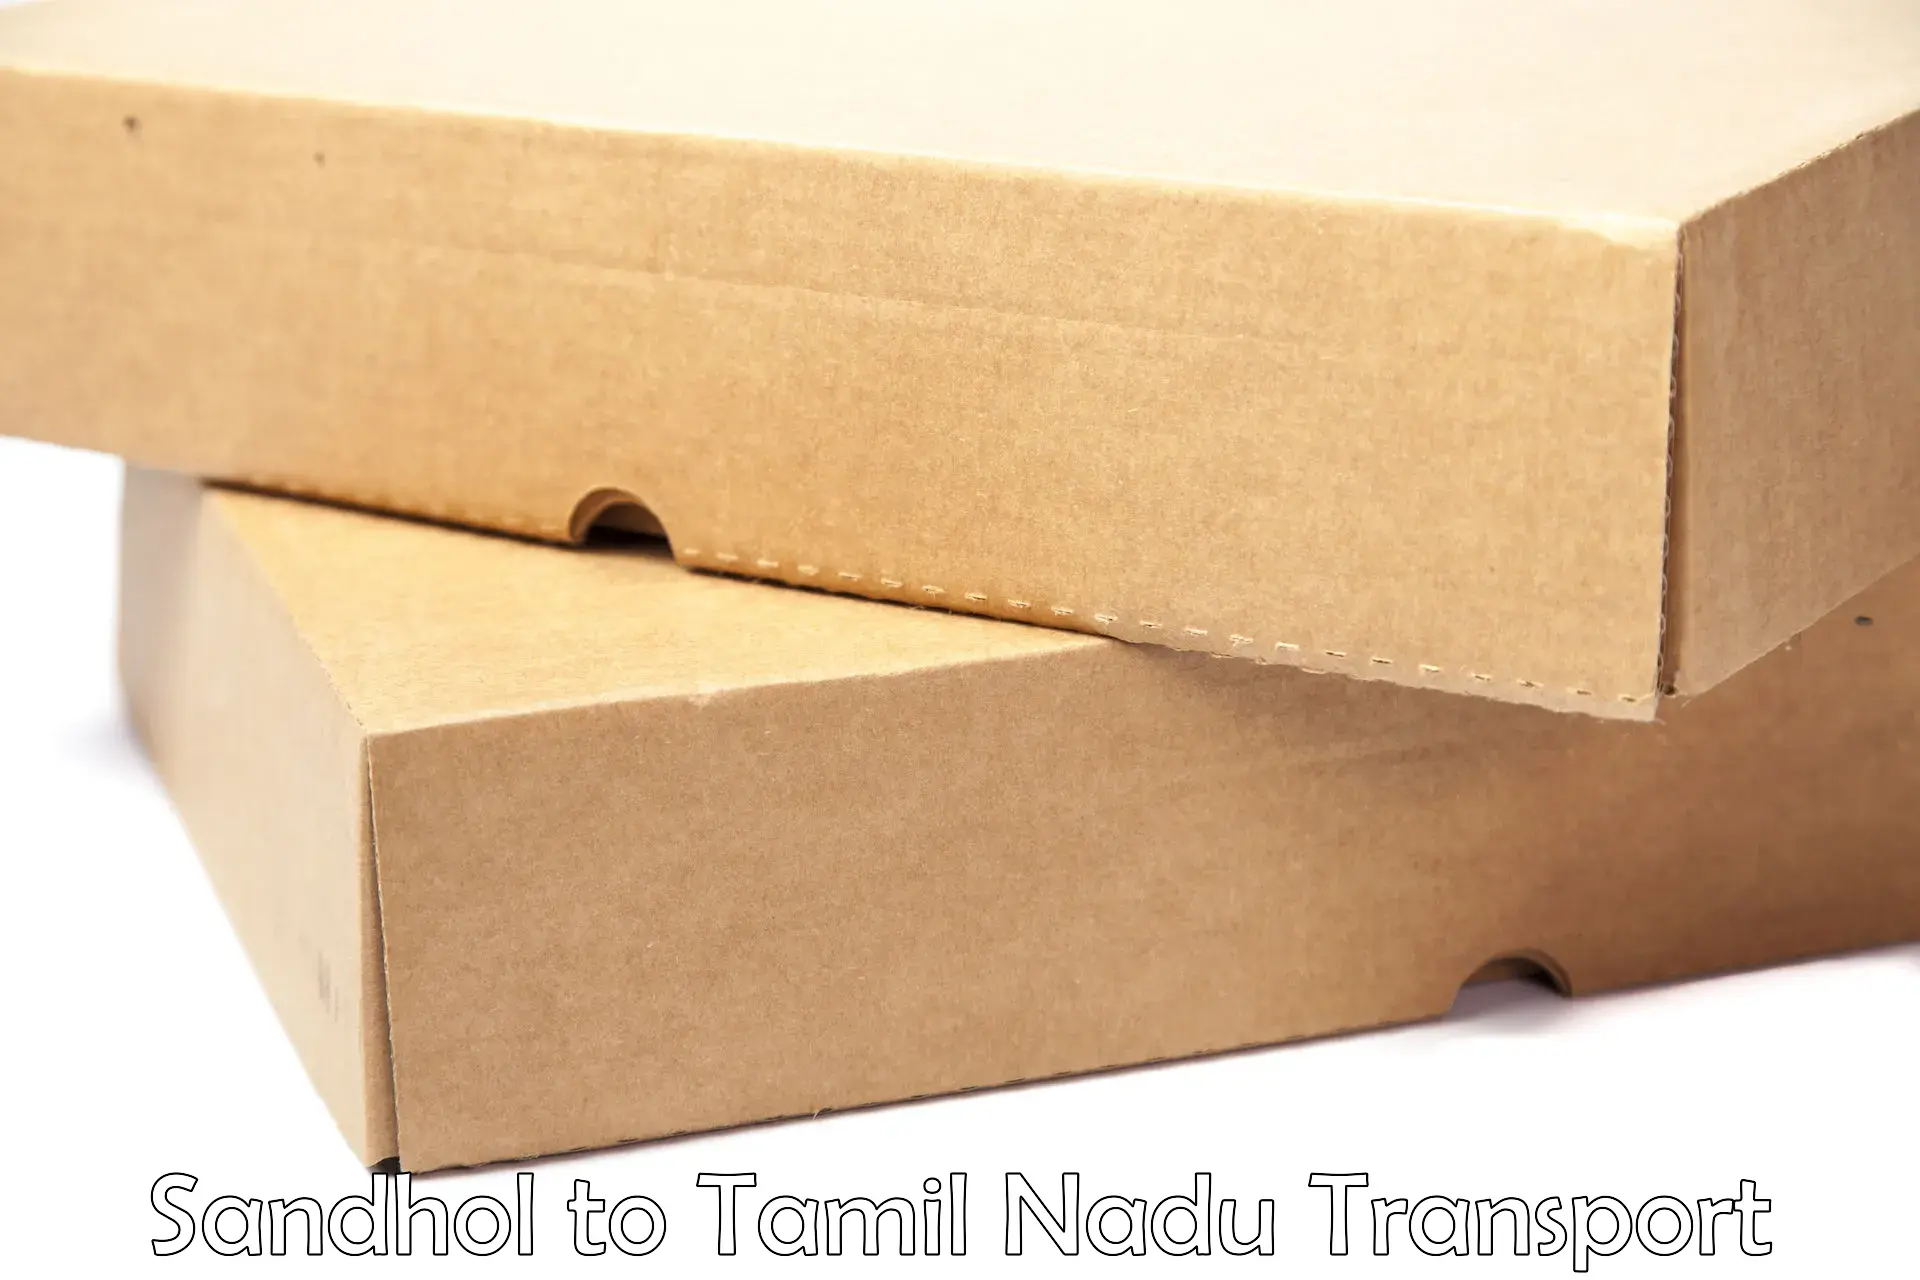 Door to door transport services Sandhol to Tamil Nadu